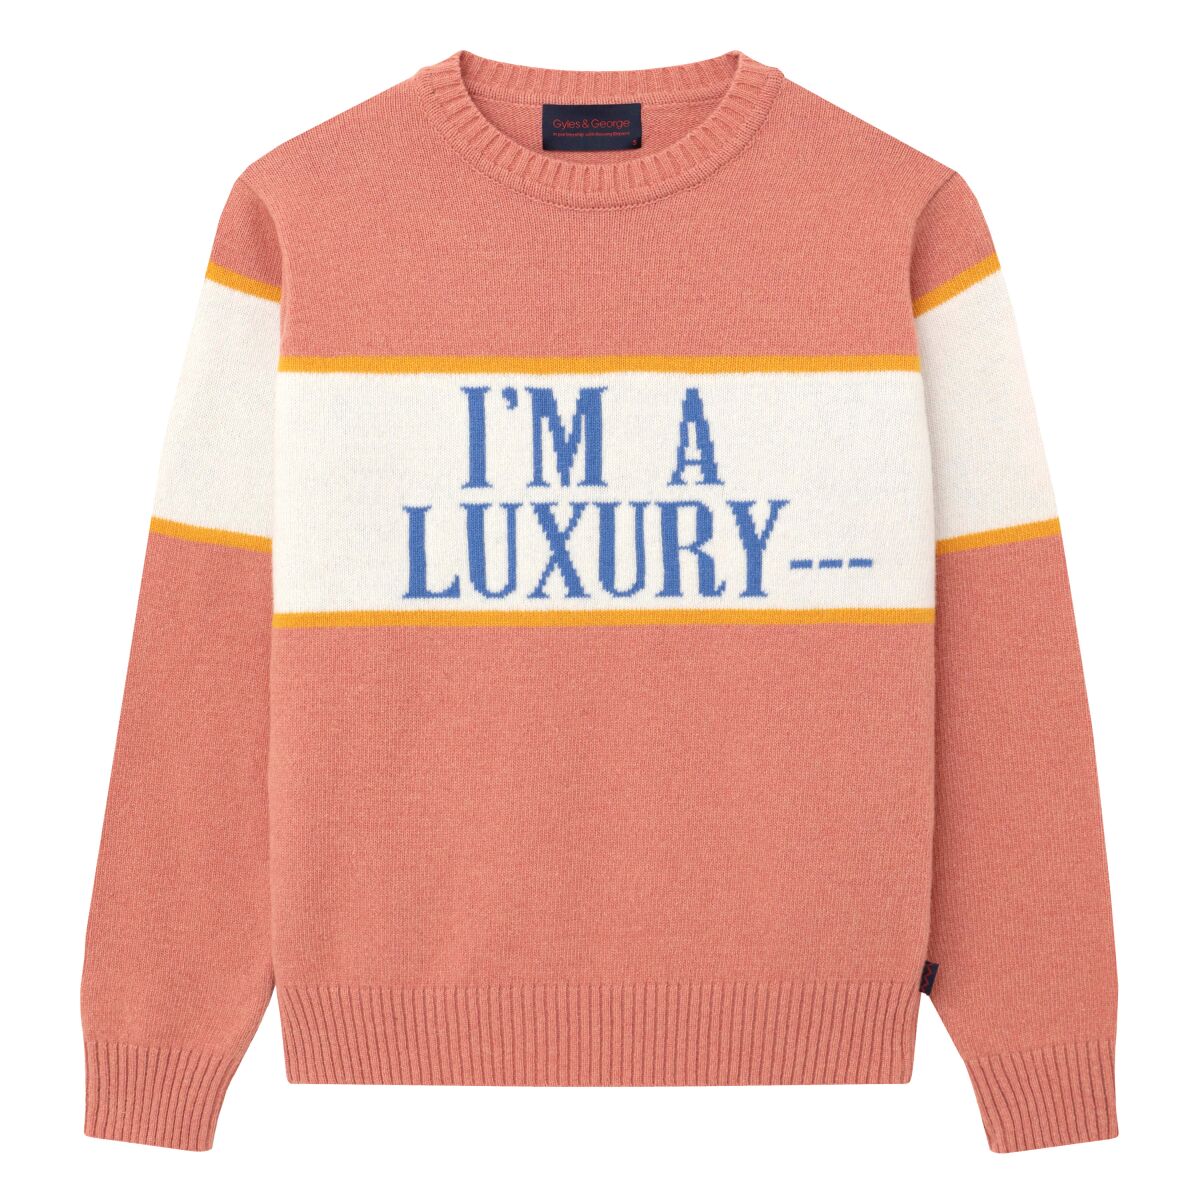 Rowing Blazers' fall/winter 2020 men's "I'm a Luxury" sweater.